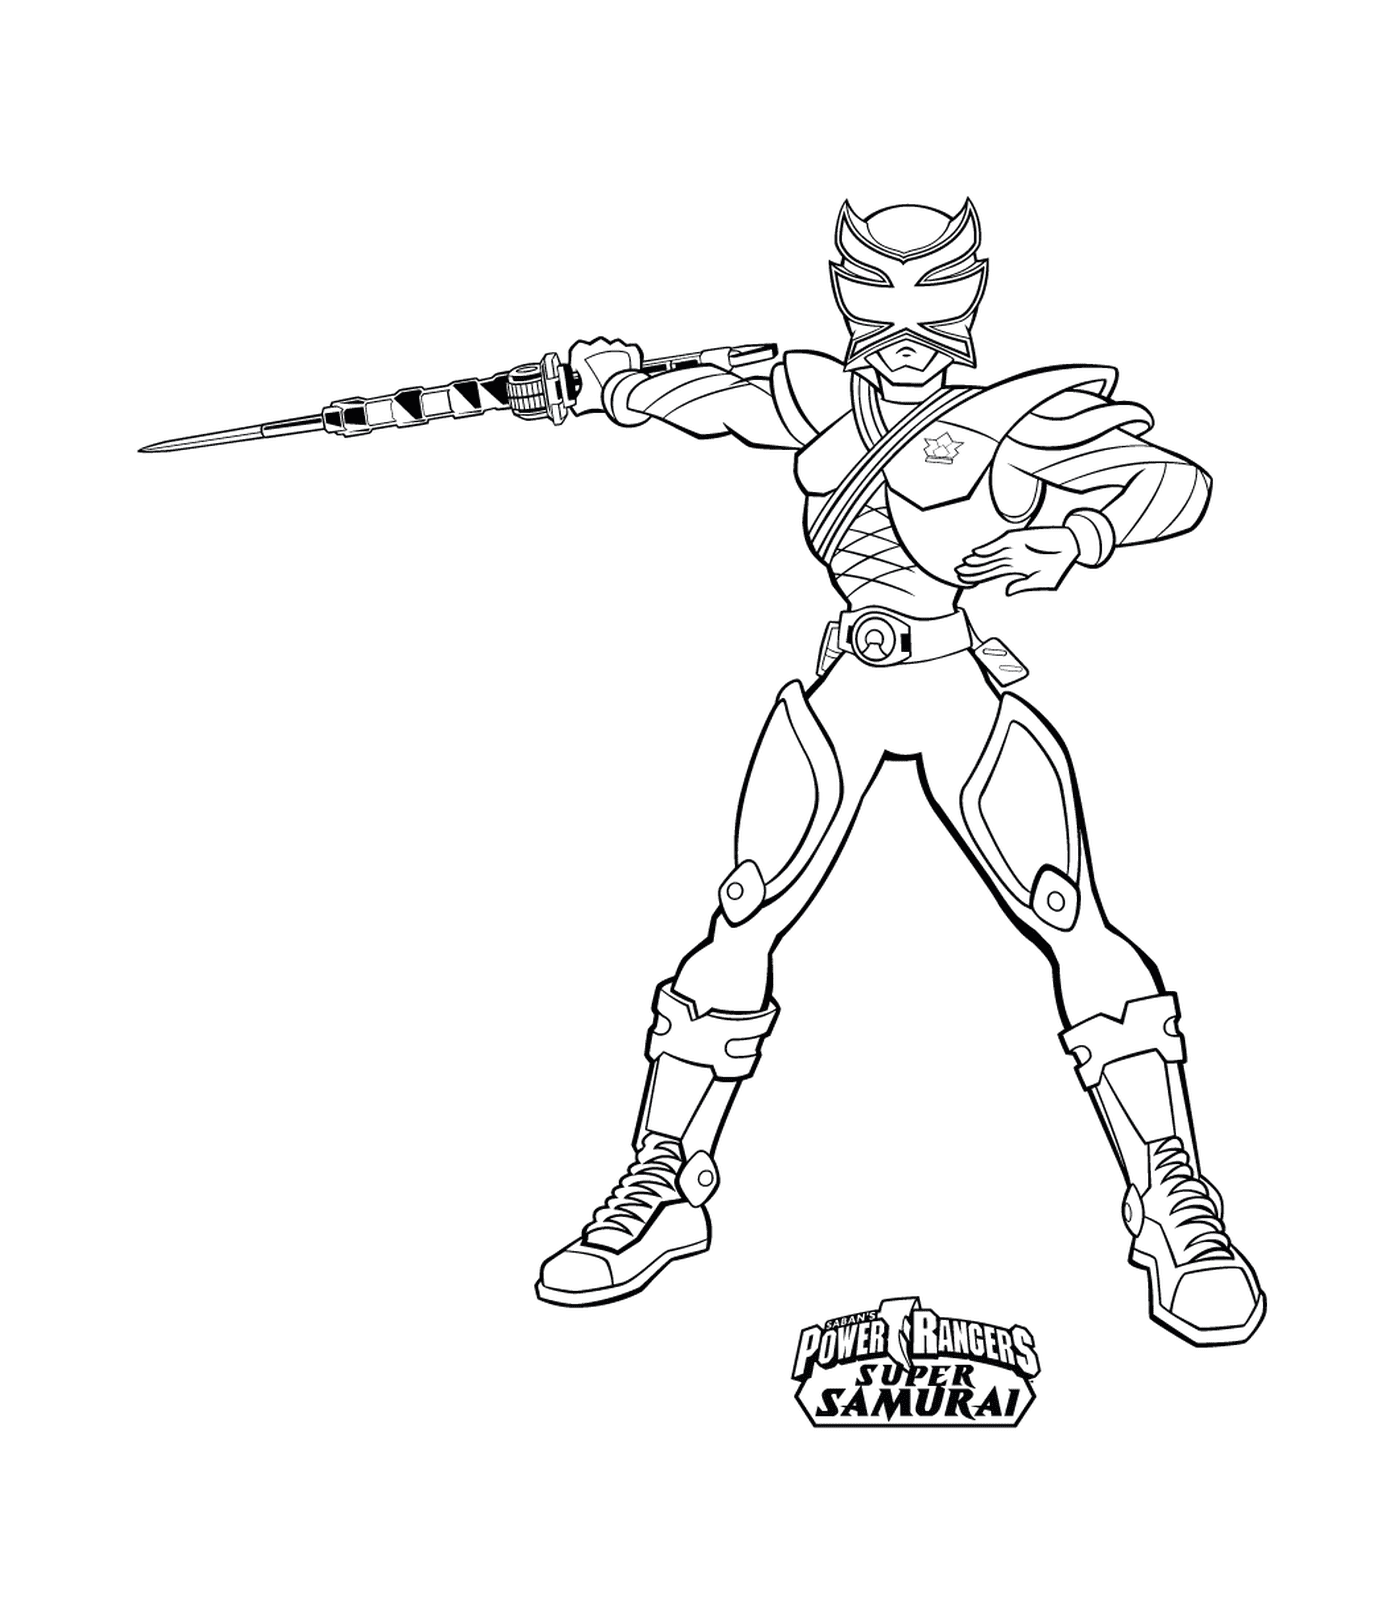  Super Samurai Power Ranger 